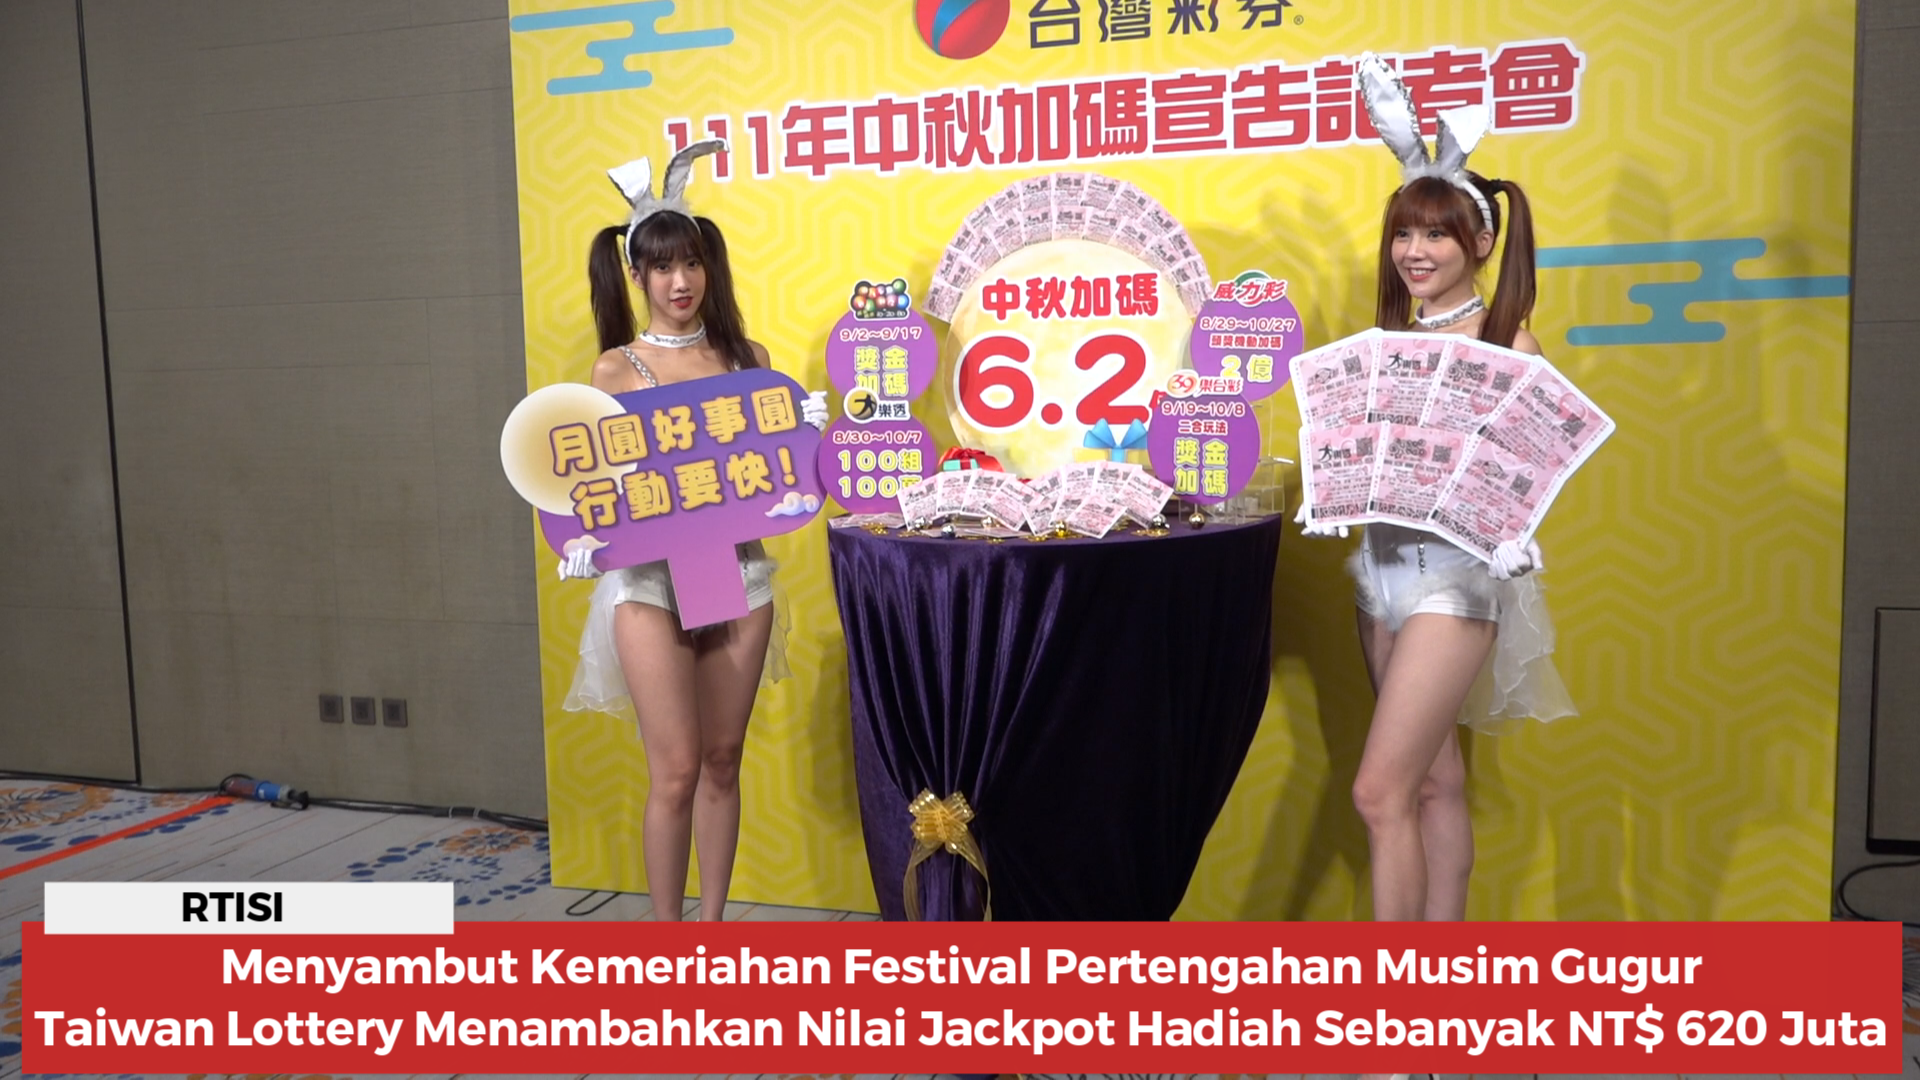 Menyambut Kemeriahan Festival Pertengahan Musim Gugur, Taiwan Lottery Menambahkan Nilai Jackpot Hadiah Sebanyak NT$ 620 Juta